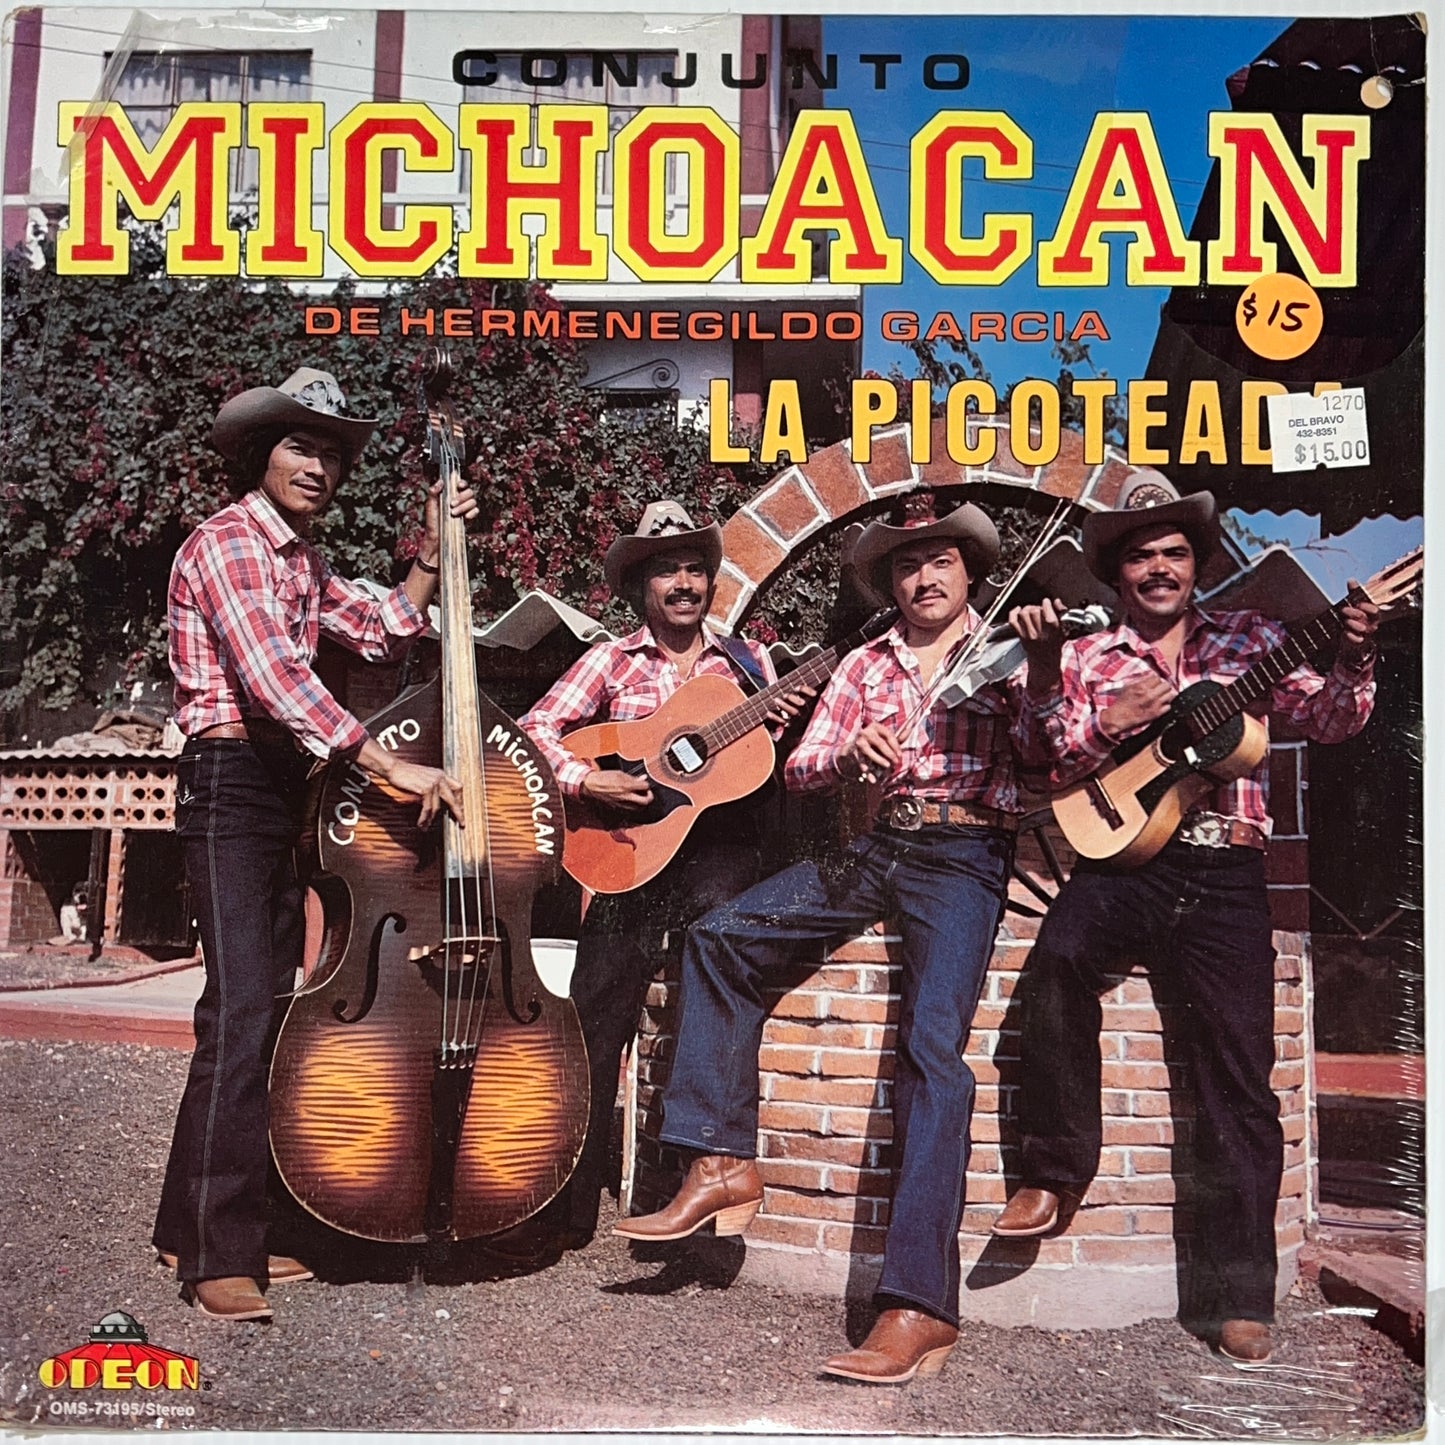 Conjunto Michocan de Hermenegildo Garcia - La Picoteada (Sealed Vinyl)